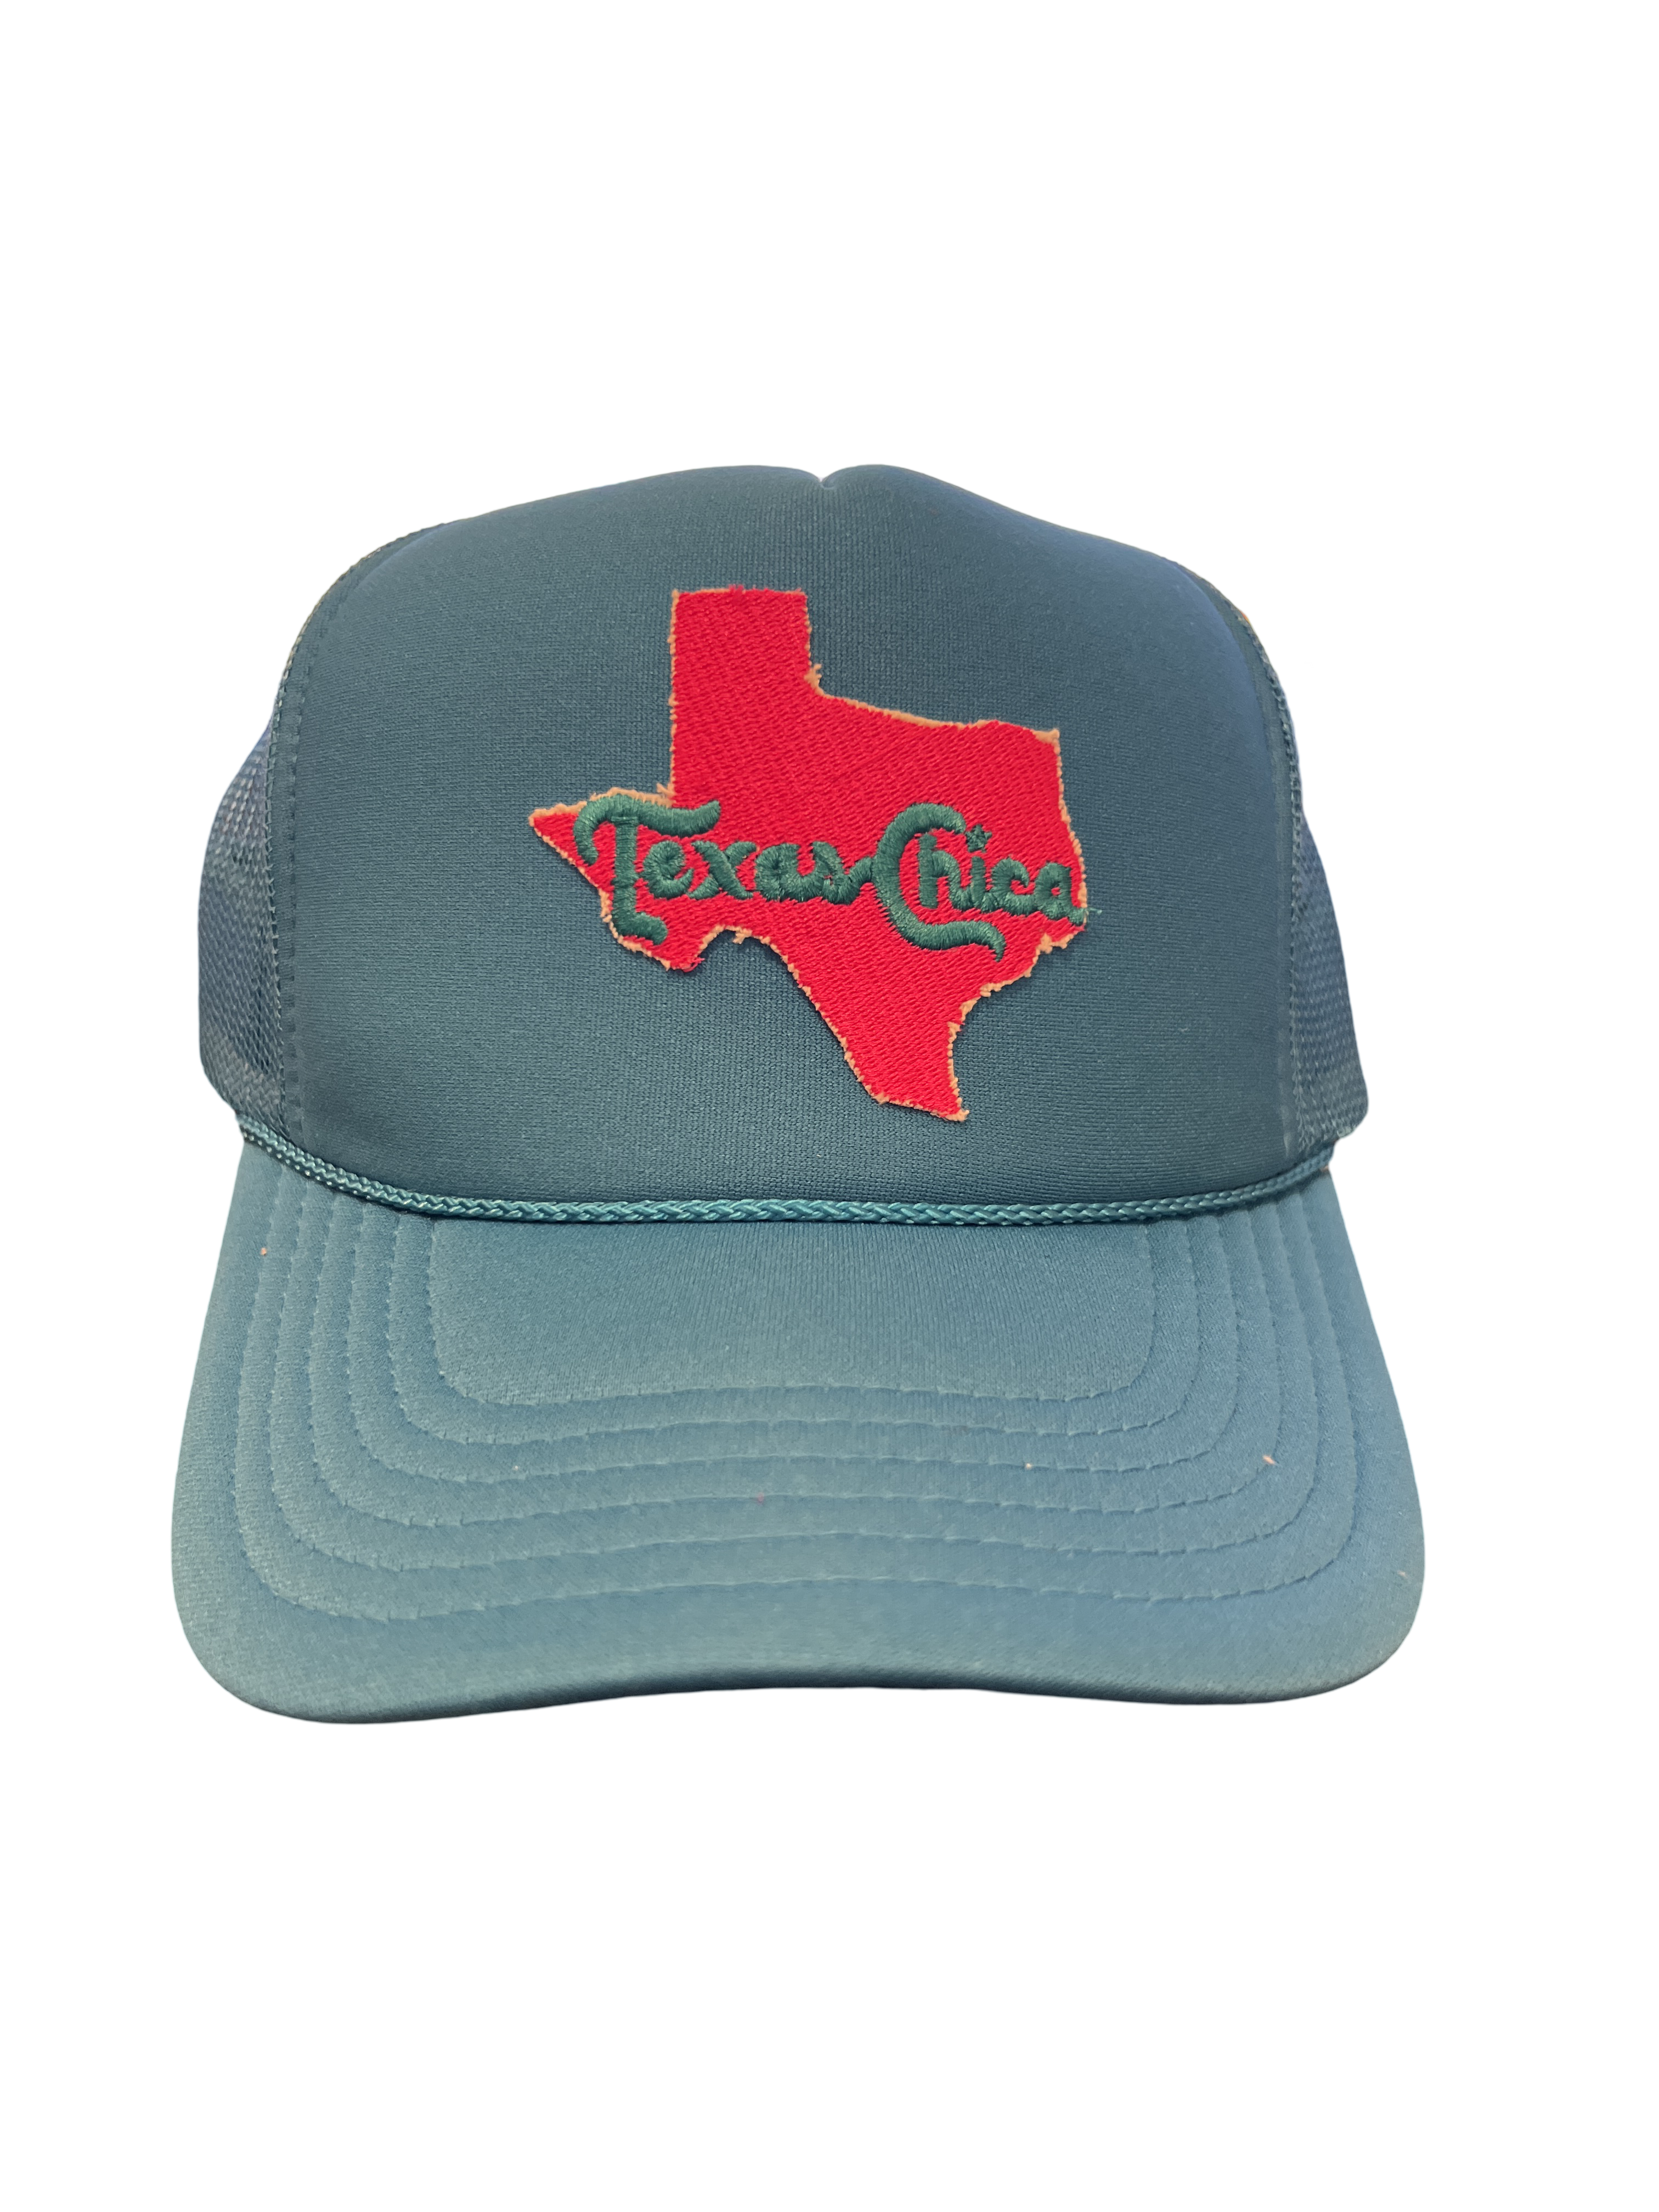 Foam Trucker Hat "Texas Chica"